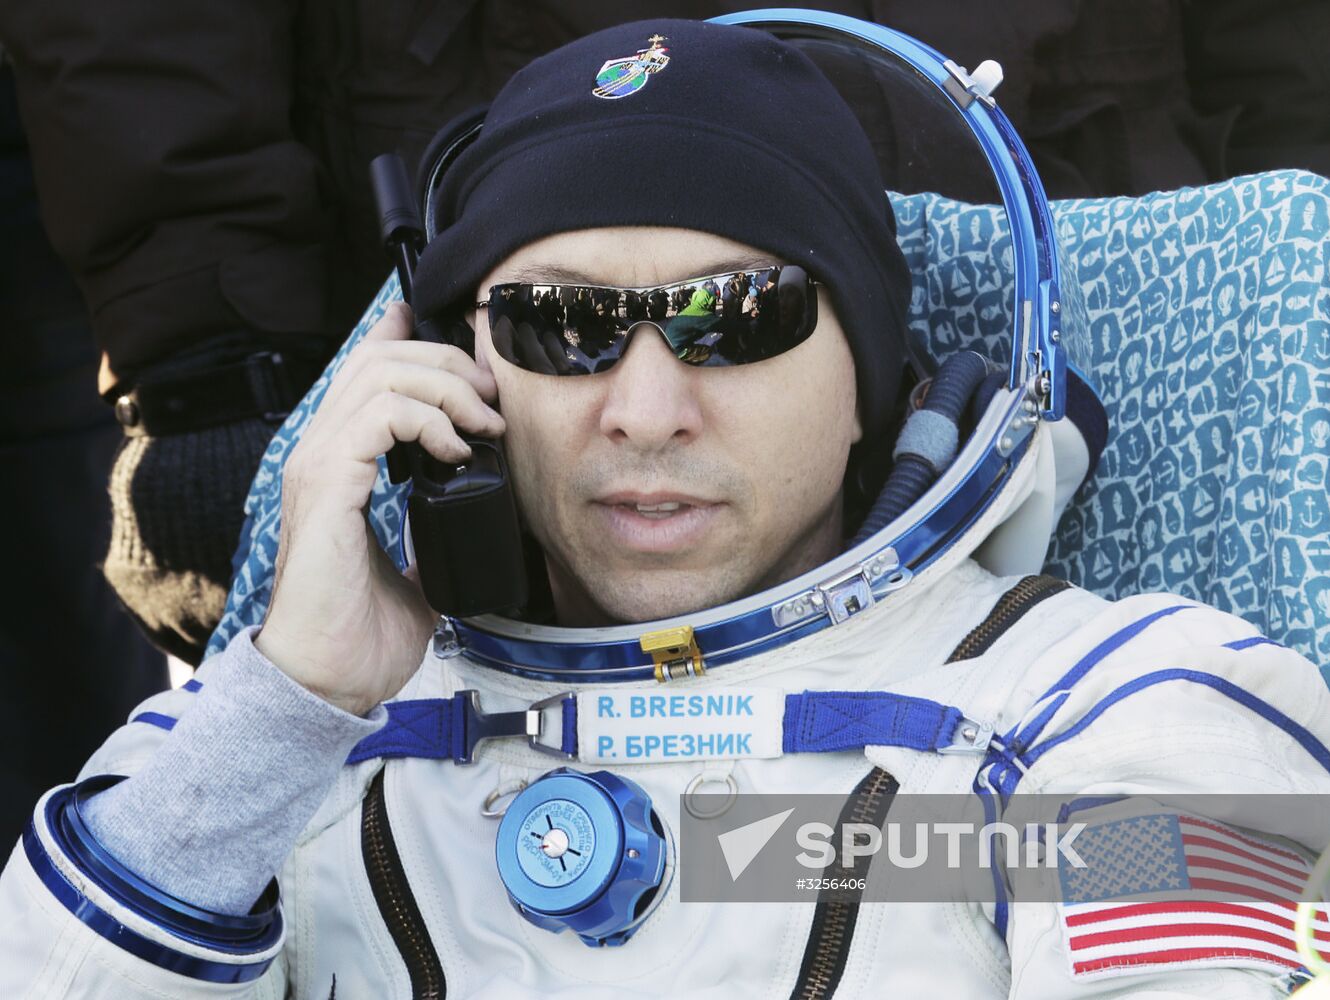 Soyuz MS-05 manned spacecraft landing